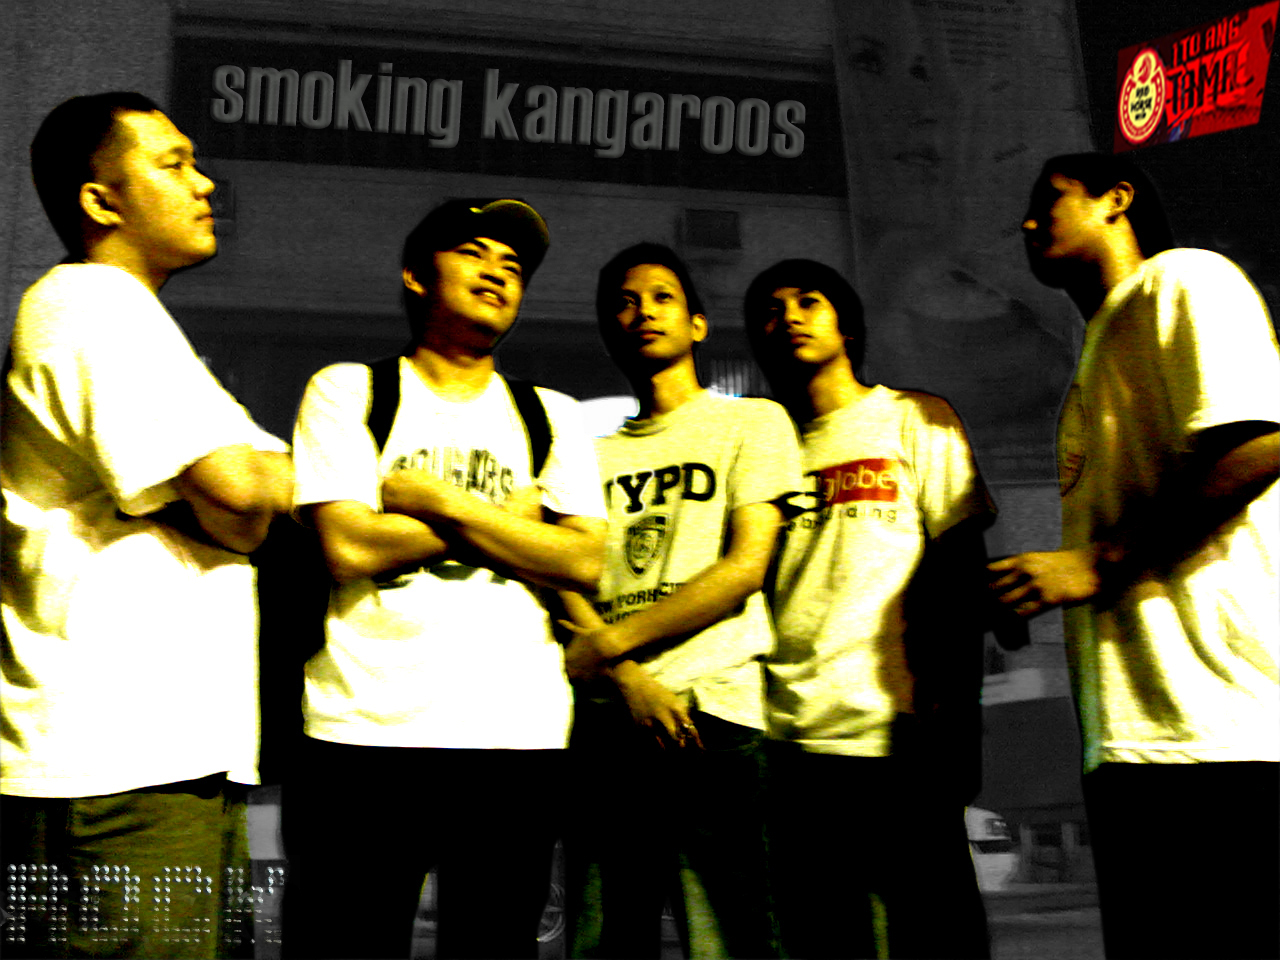 [Smoking_kangaroos_final.jpg]